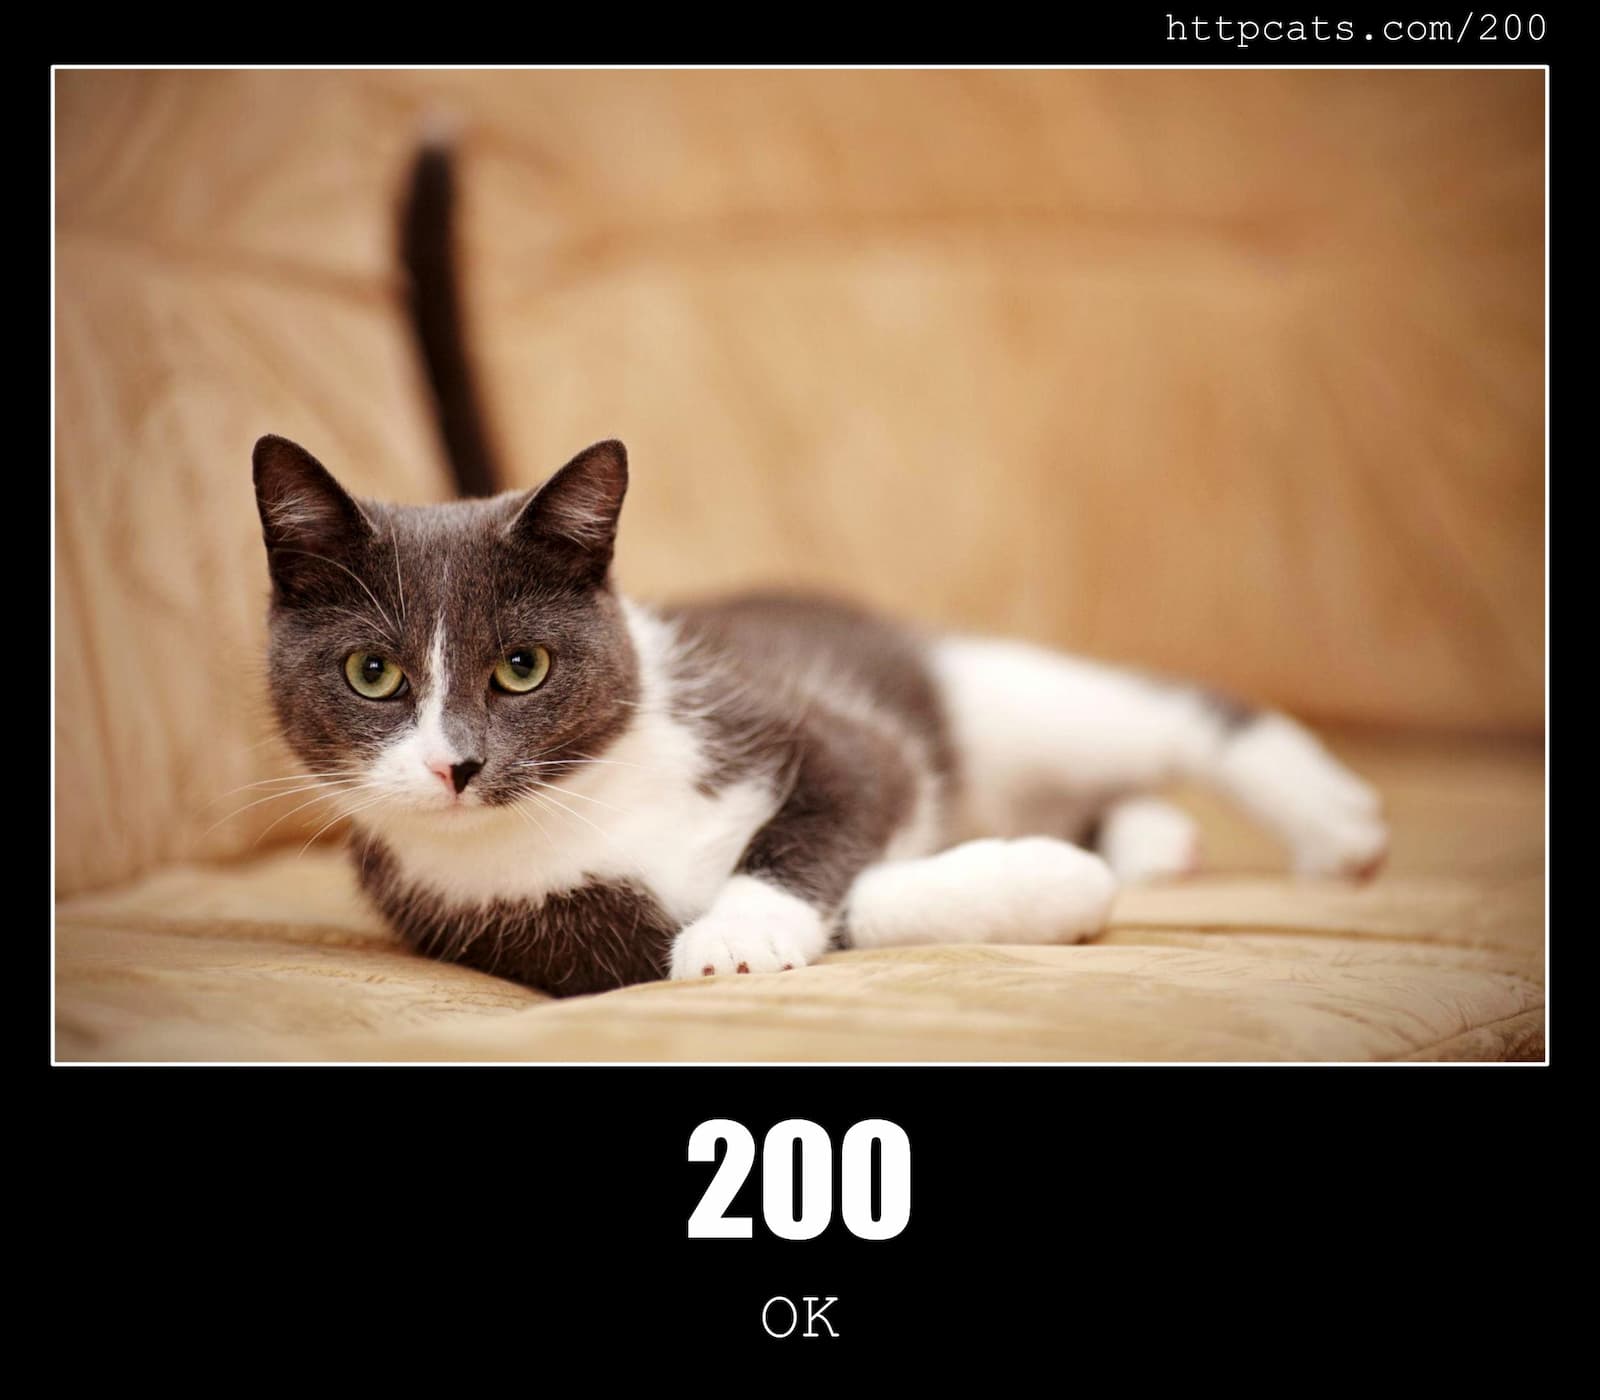 HTTP Status Code 200 OK & Cats